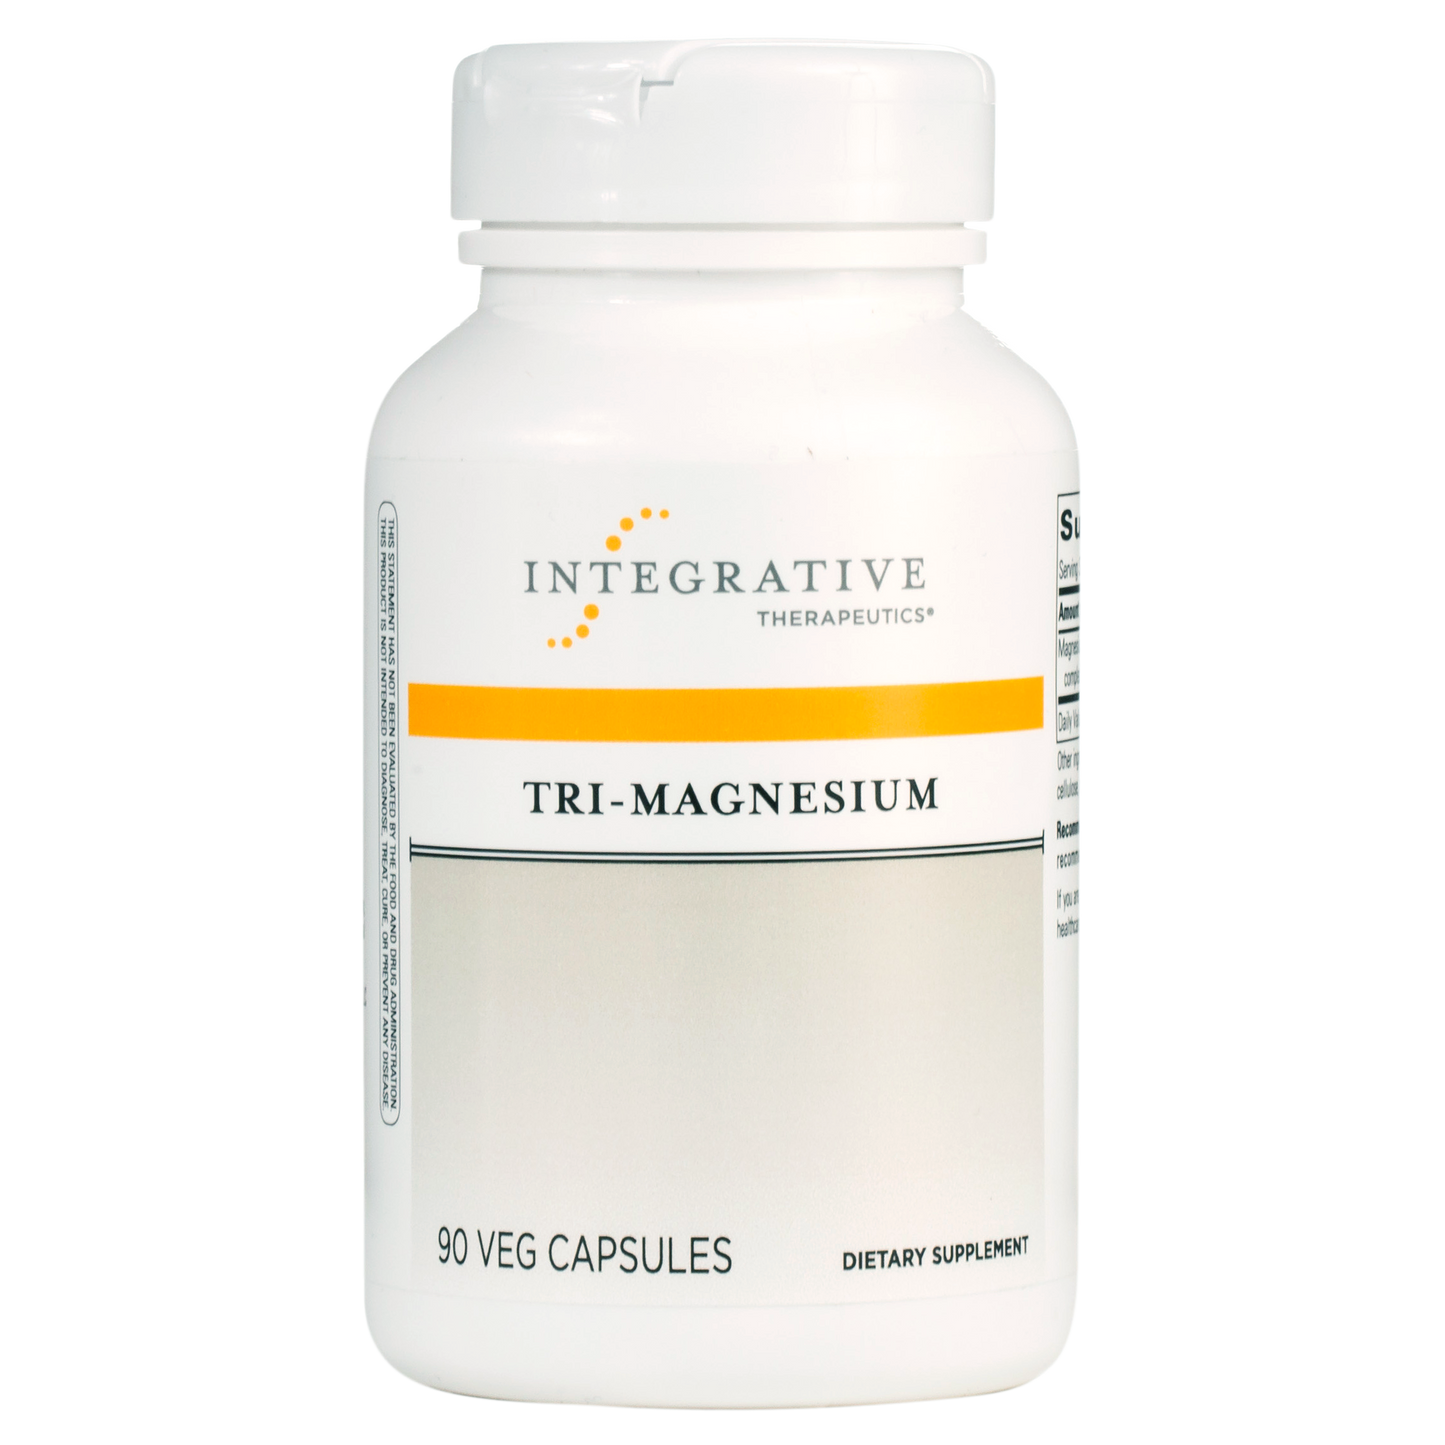 Integrative Therapeutics - tri-magnesium supplement white bottle